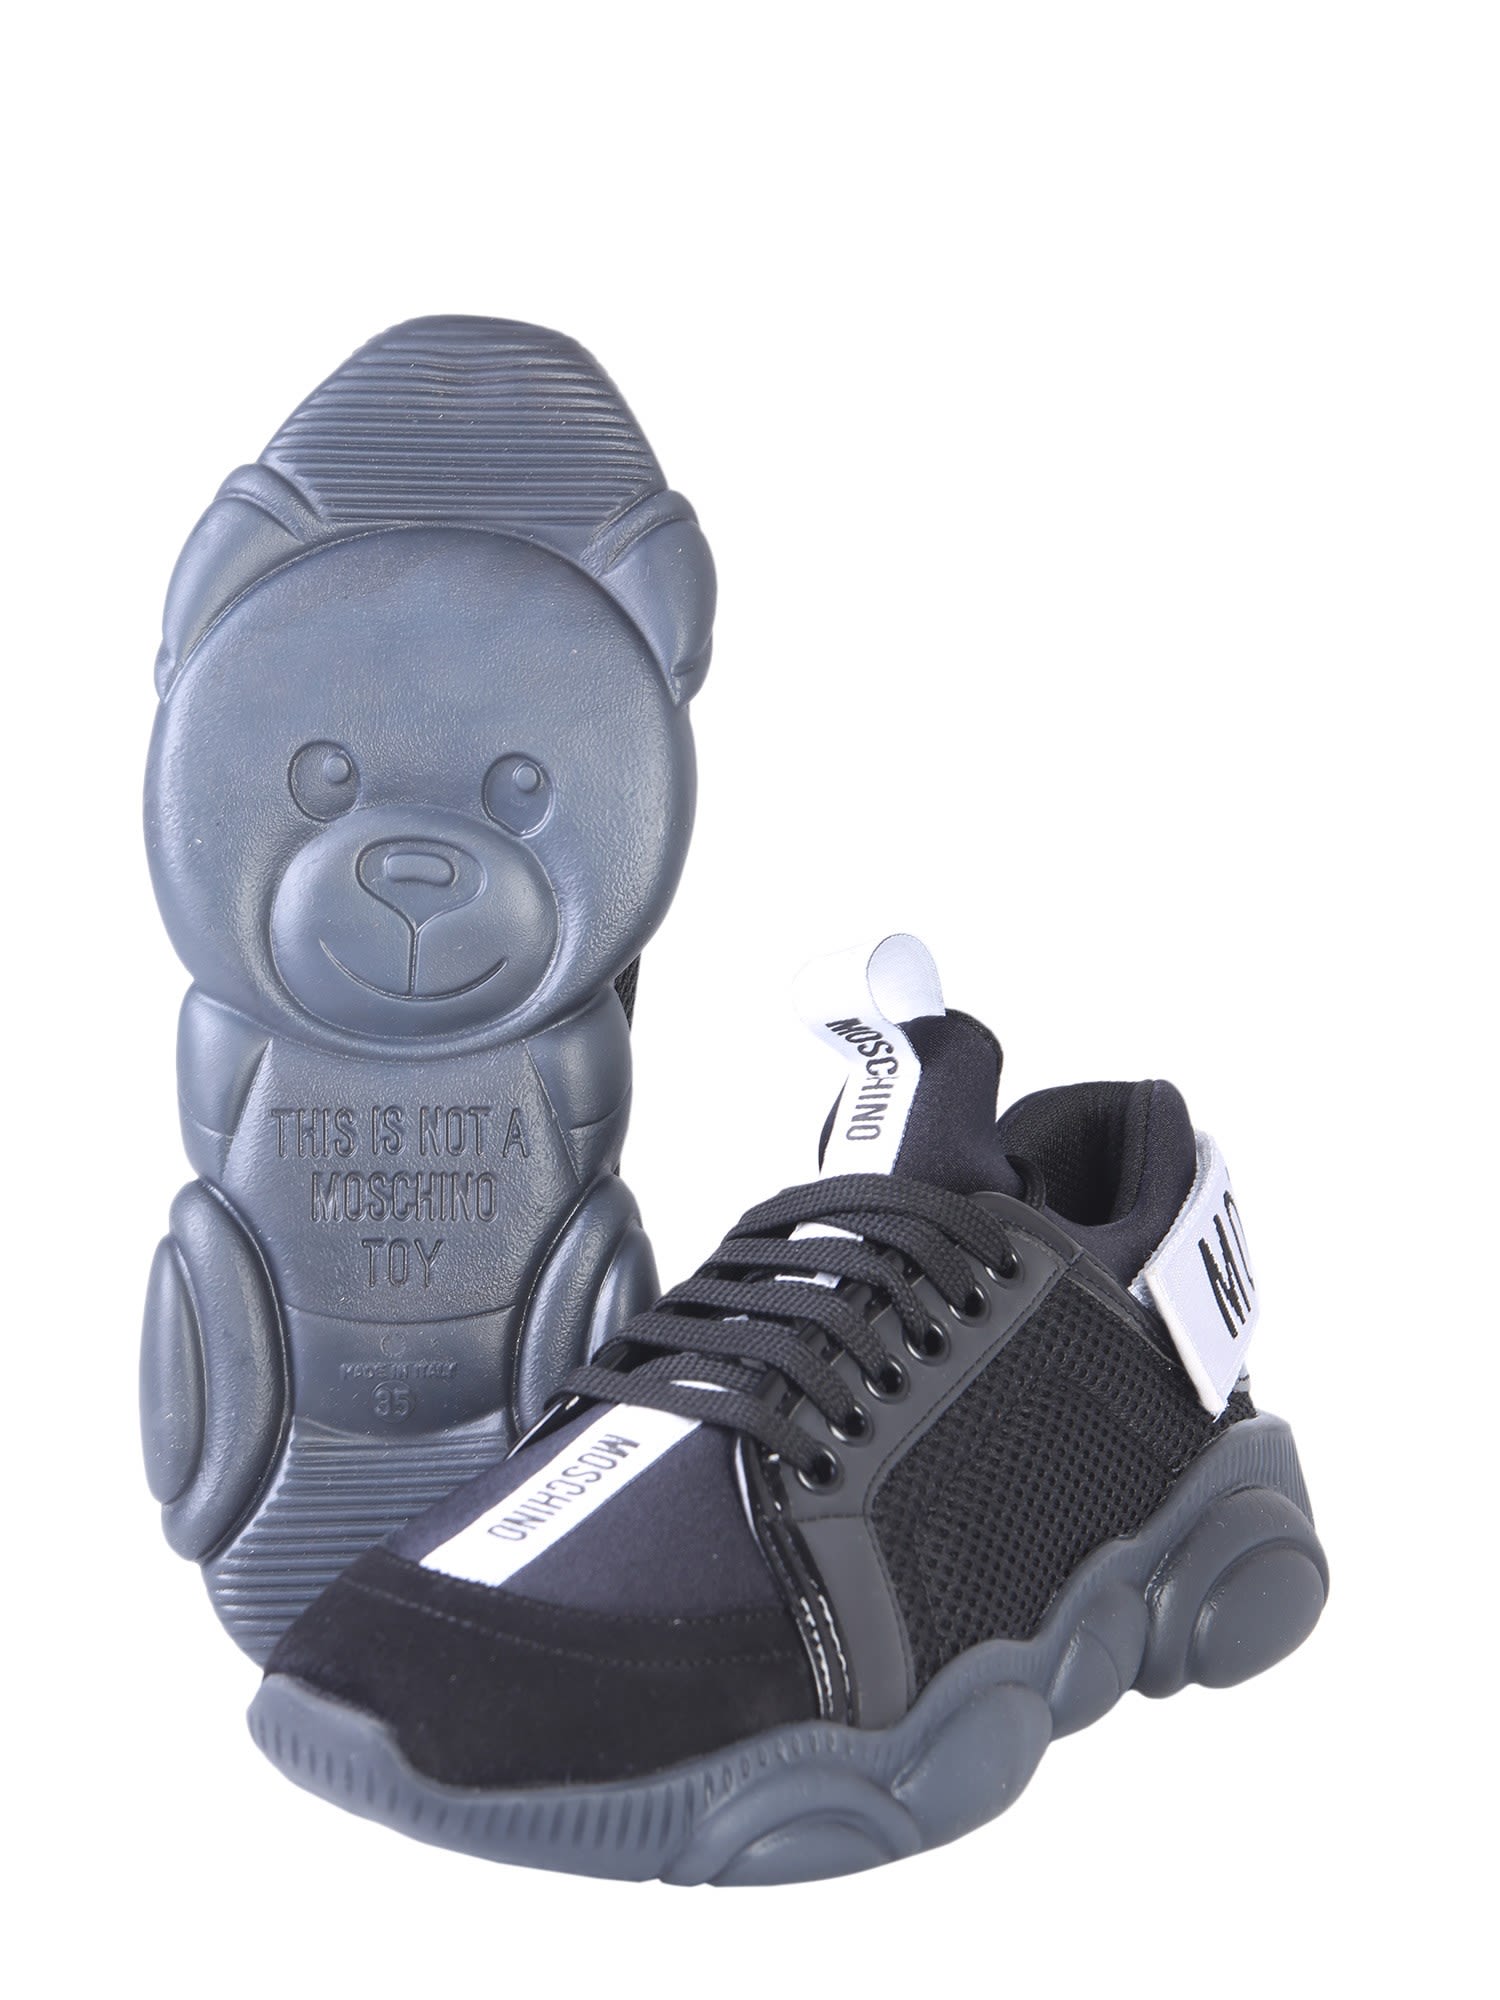 Moschino Moschino Teddy Bear Run Sneakers NERO